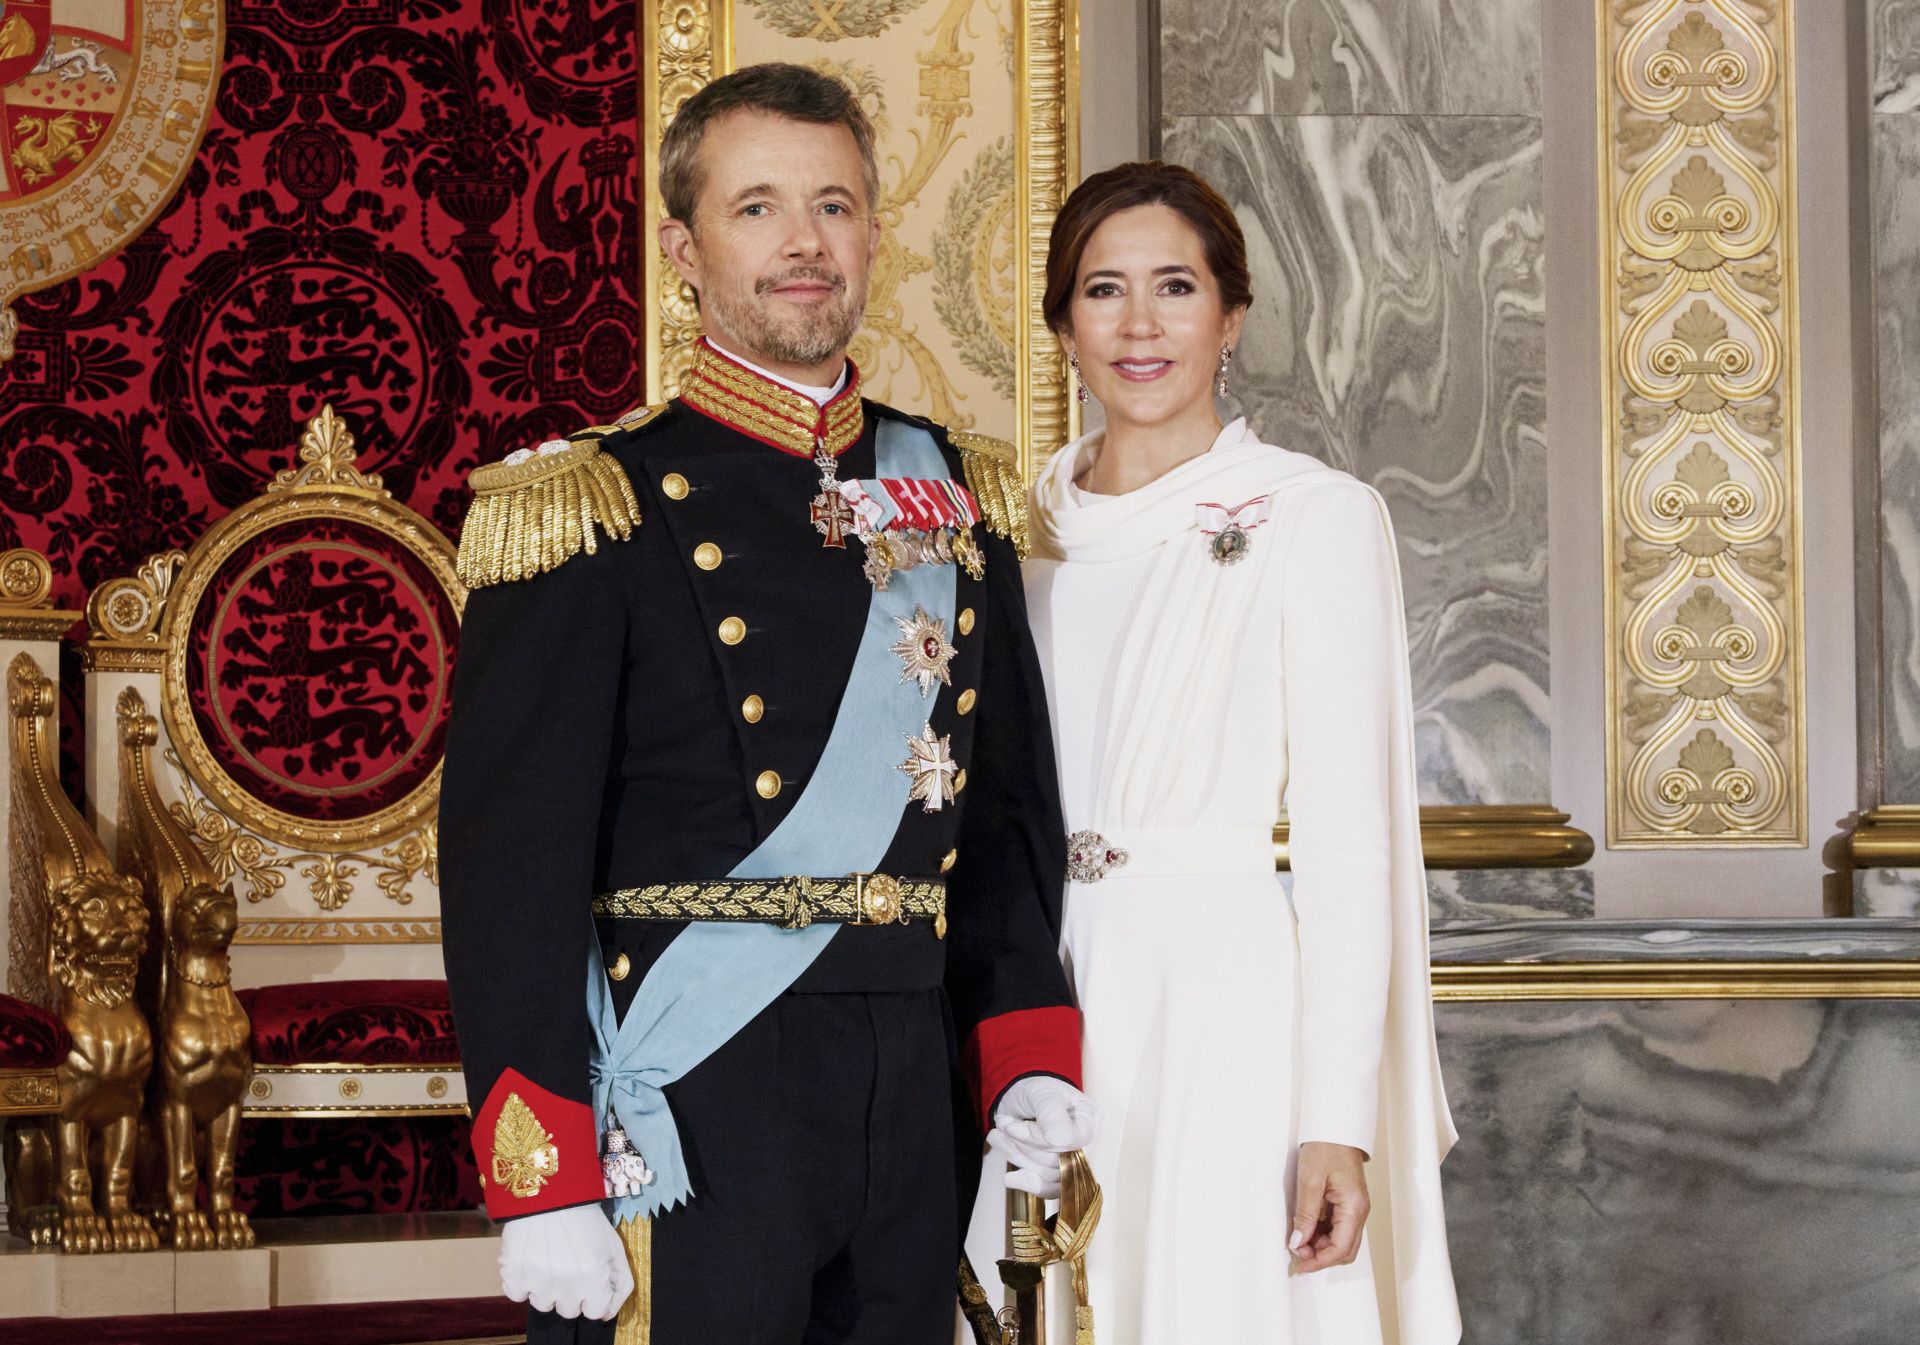 Retrato oficial Federico X y Mary de Dinamarca, los nuevos Reyes de dicha nación.